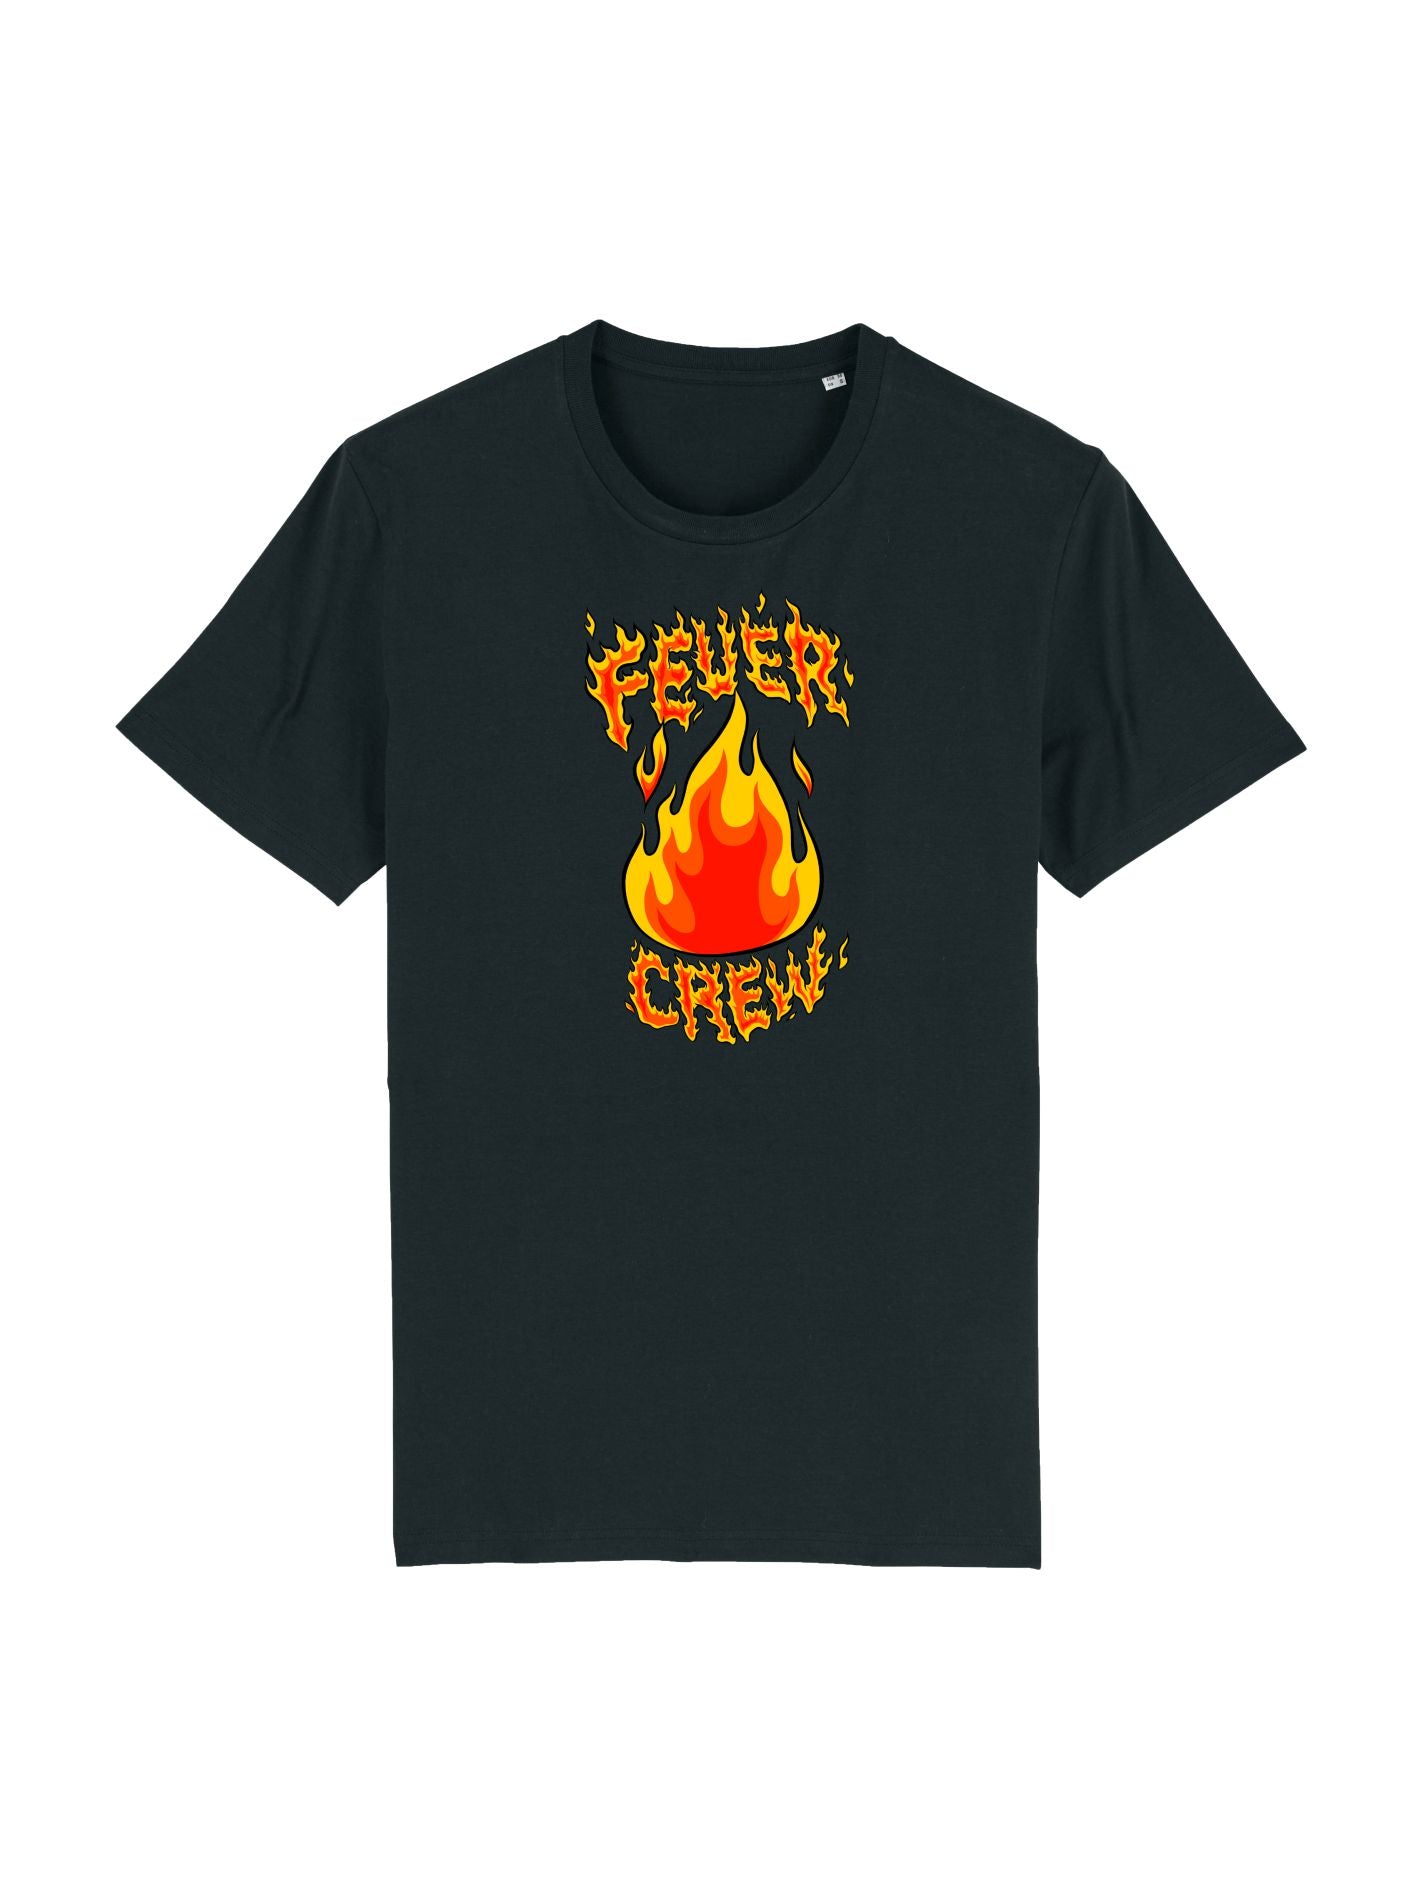 Feuer CREW Kids - Shirt